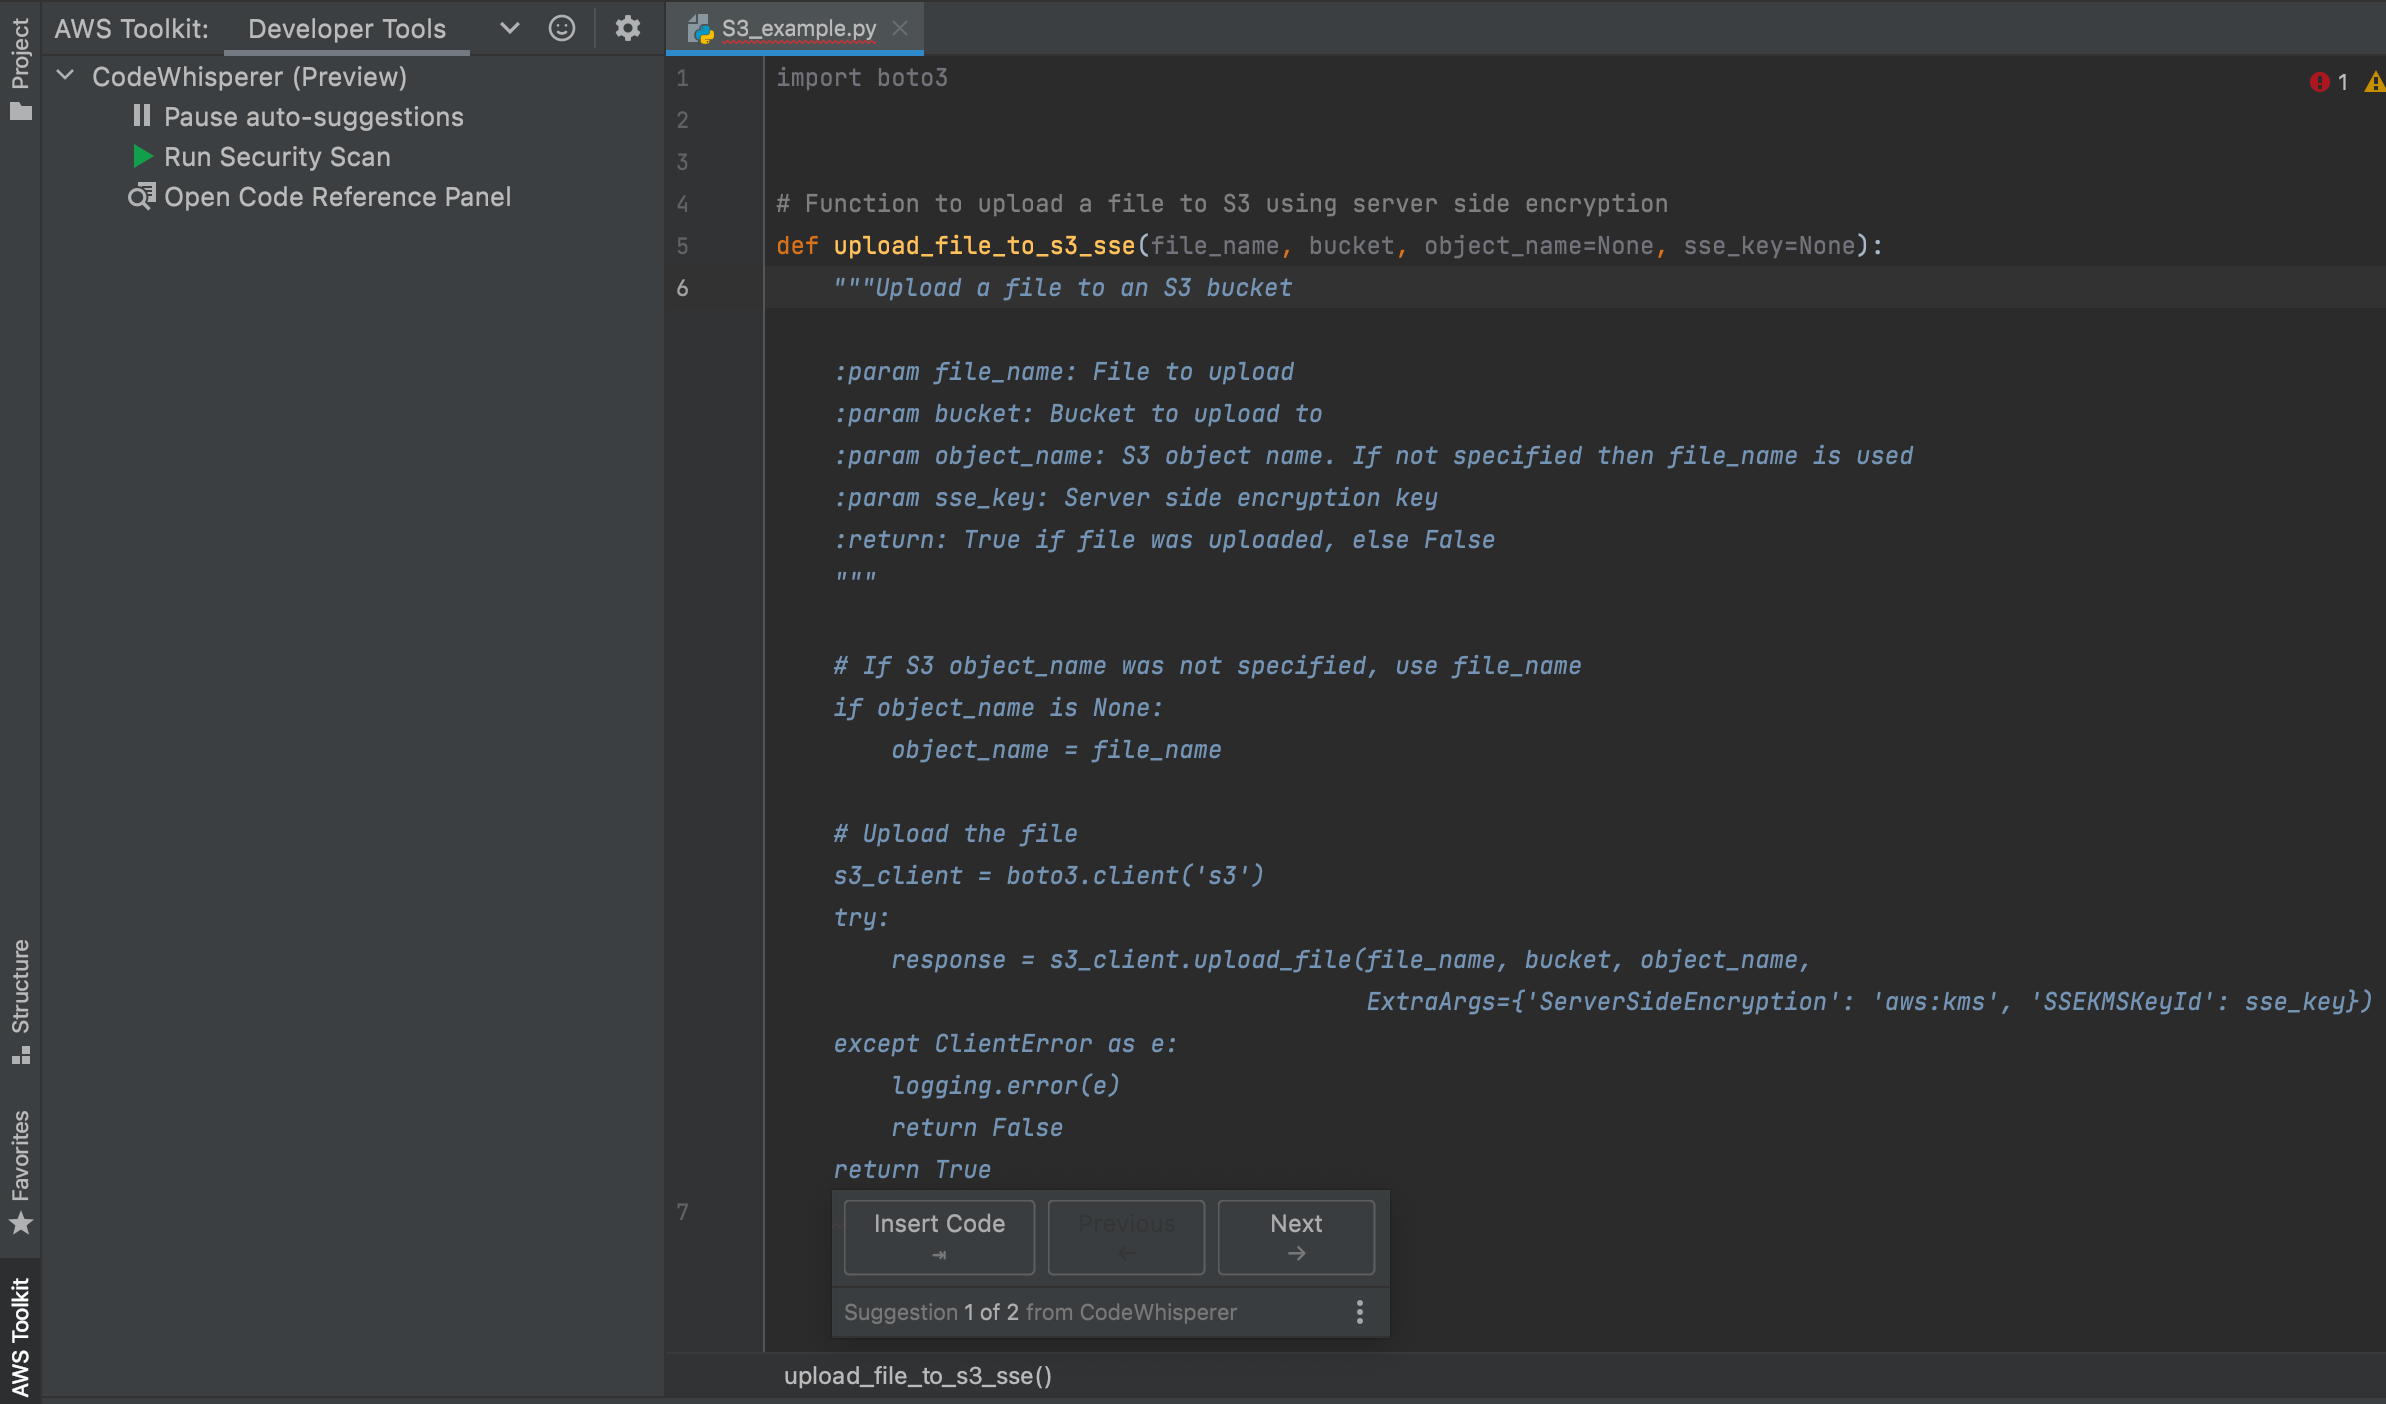 亚马逊推出CodeWhisperer 一款类似GitHub Copilot的AI编程辅助工具